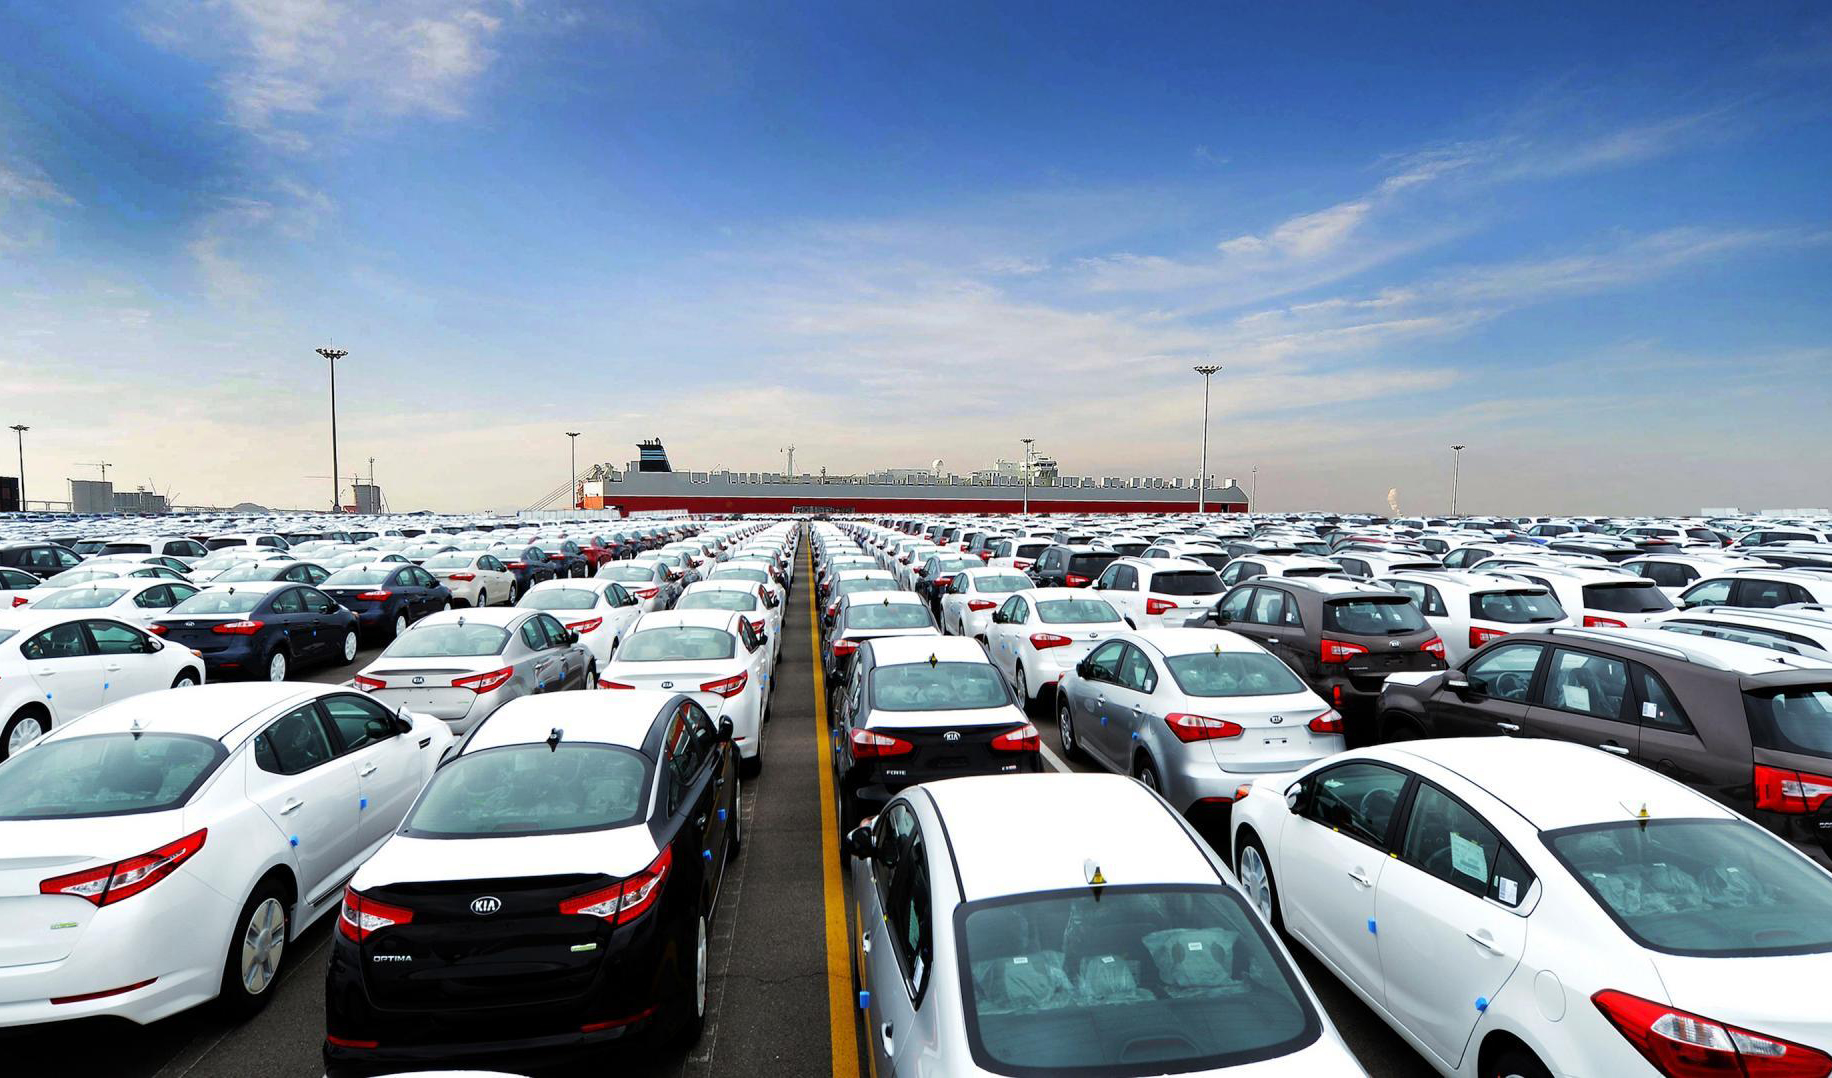 کلیات طرح واردات خودرو در مجمع تشخیص تصویب شد